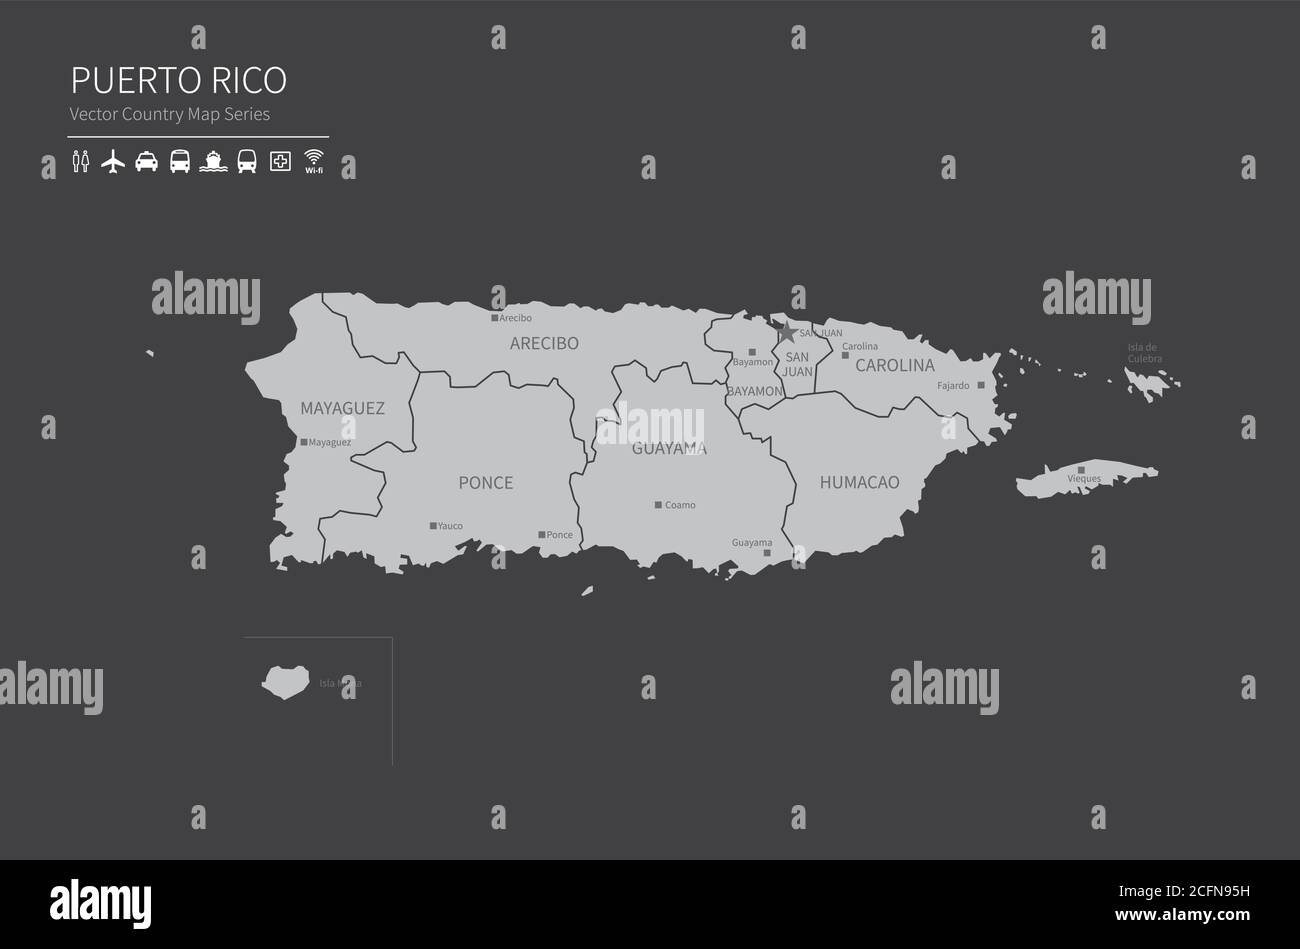 Puerto rico-Karte. Nationale Karte der Welt. Grau gefärbte Länder Kartenserie. Stock Vektor